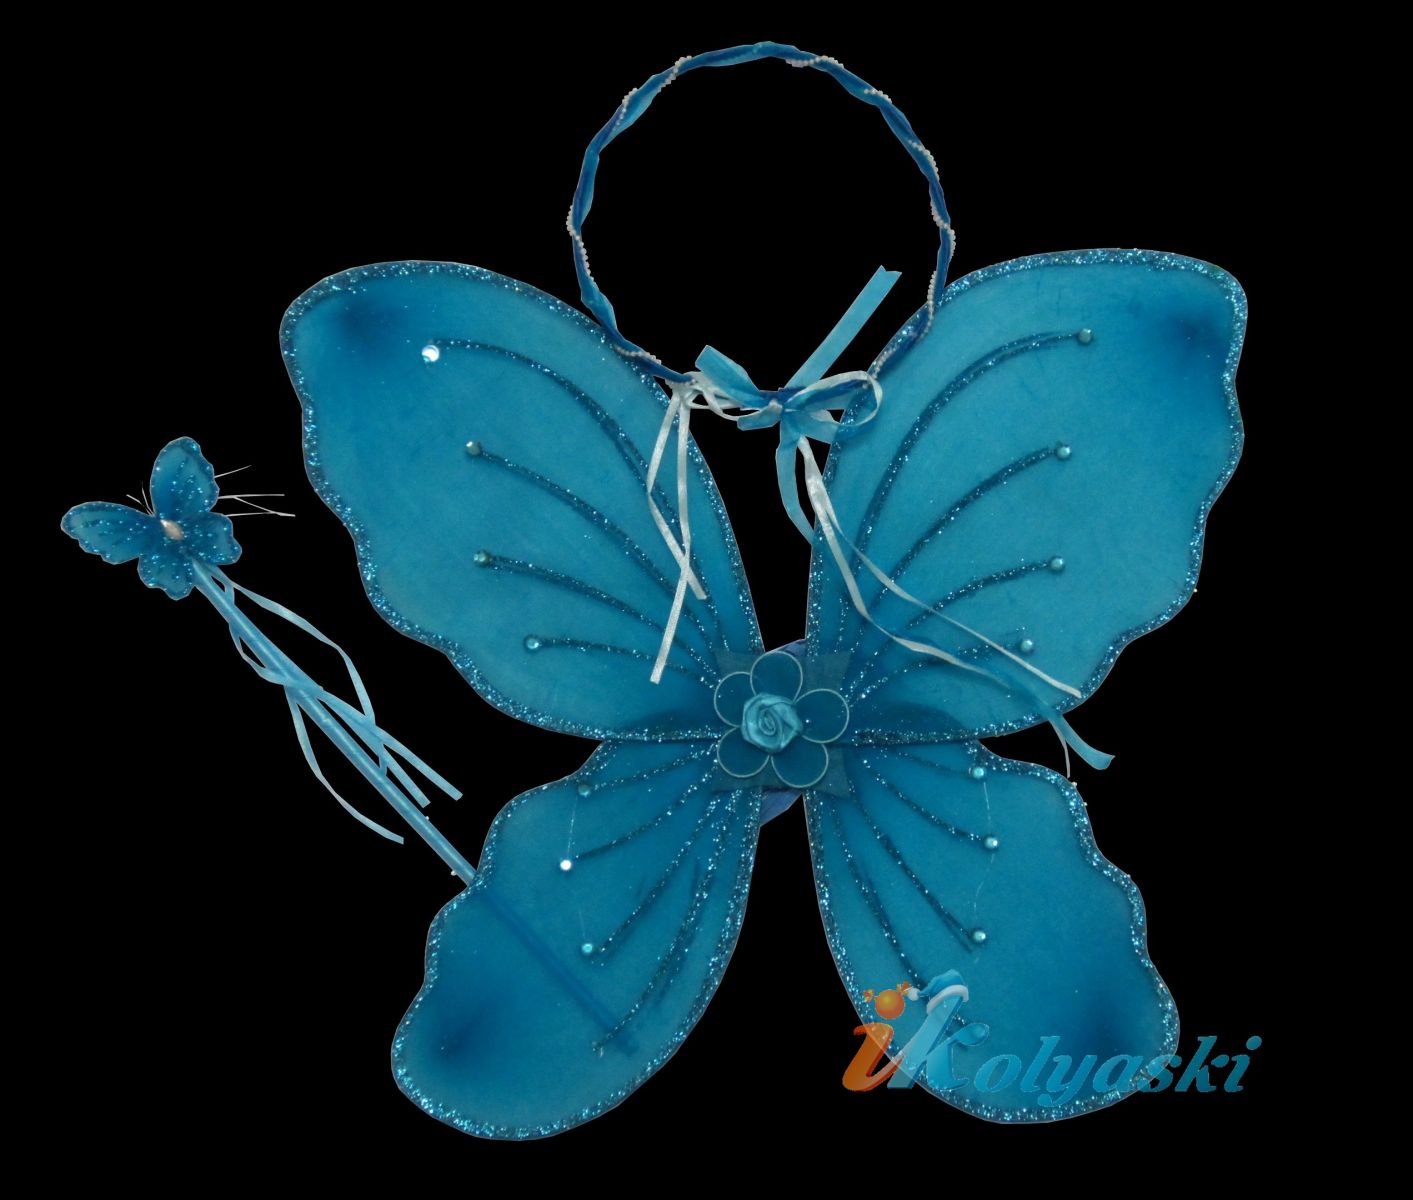 Крылья бабочки, крылья волшебной феи бабочек, крылья стрекозы, крылья голубого мотылька, урылья феи Винкс. Карнавальный набор: крылья двойные, ободок, волшебная палочка (Winx), размер крыльев 47х38 см, цвет ГОЛУБОЙ, артикул Е91191, фирма Snowmen